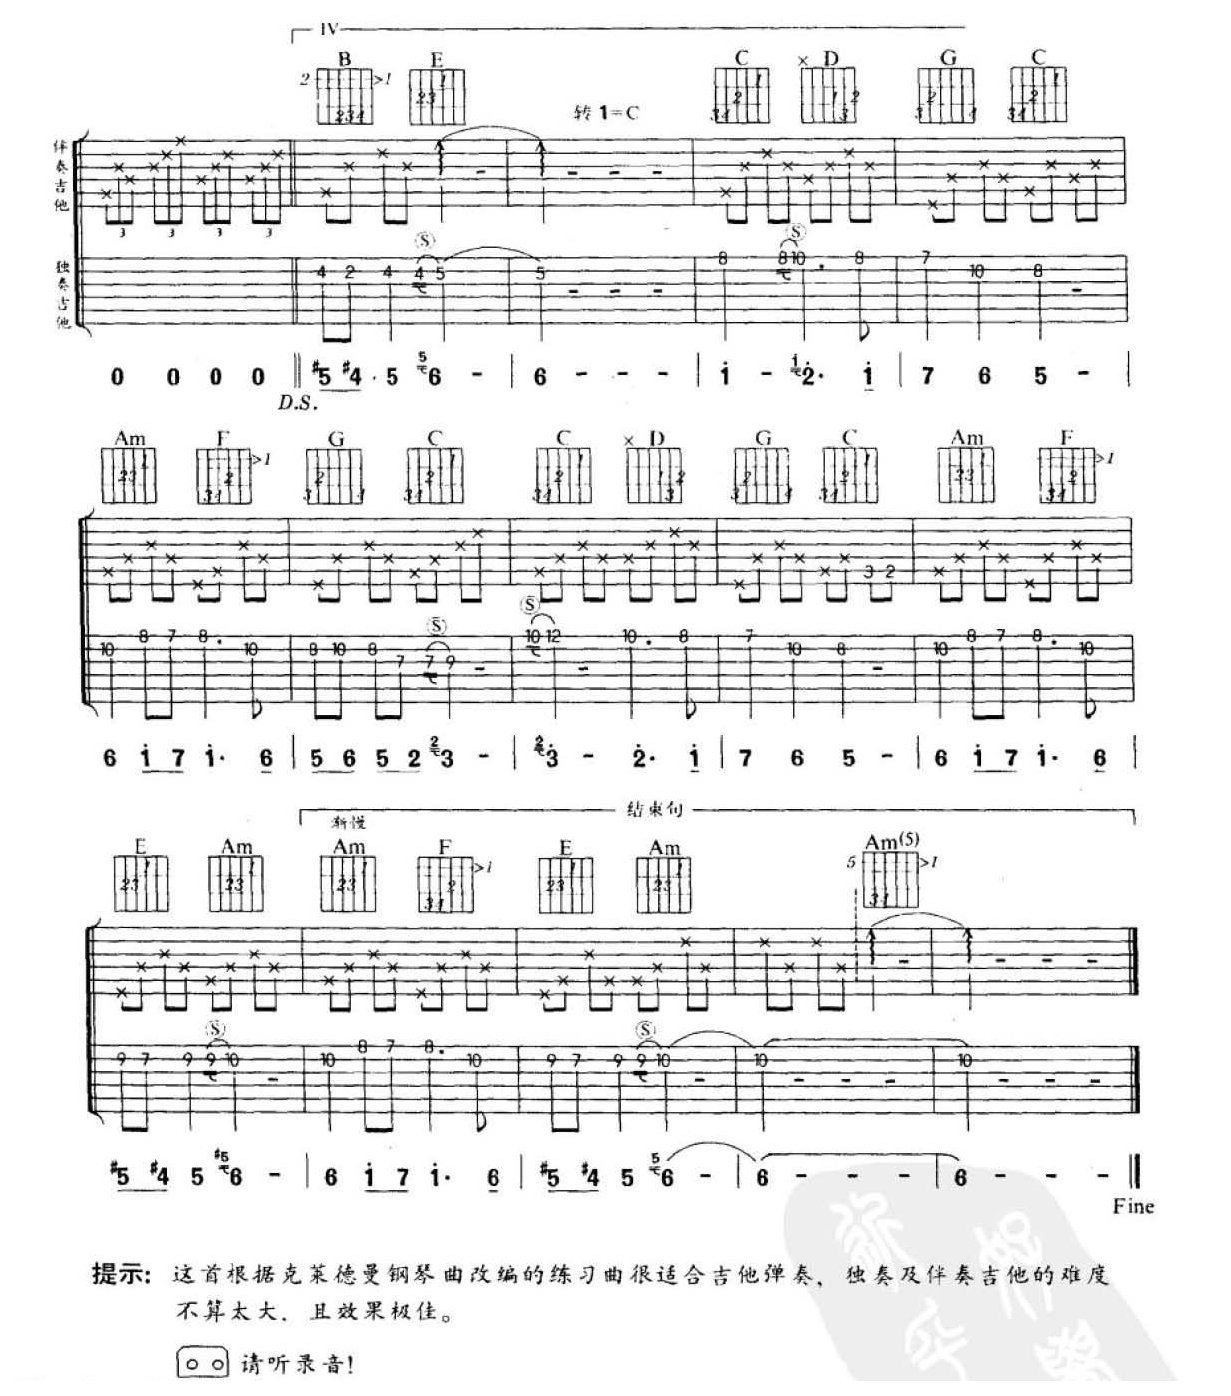 克莱德曼钢琴曲改编的吉他曲《蓝色的爱》双吉他